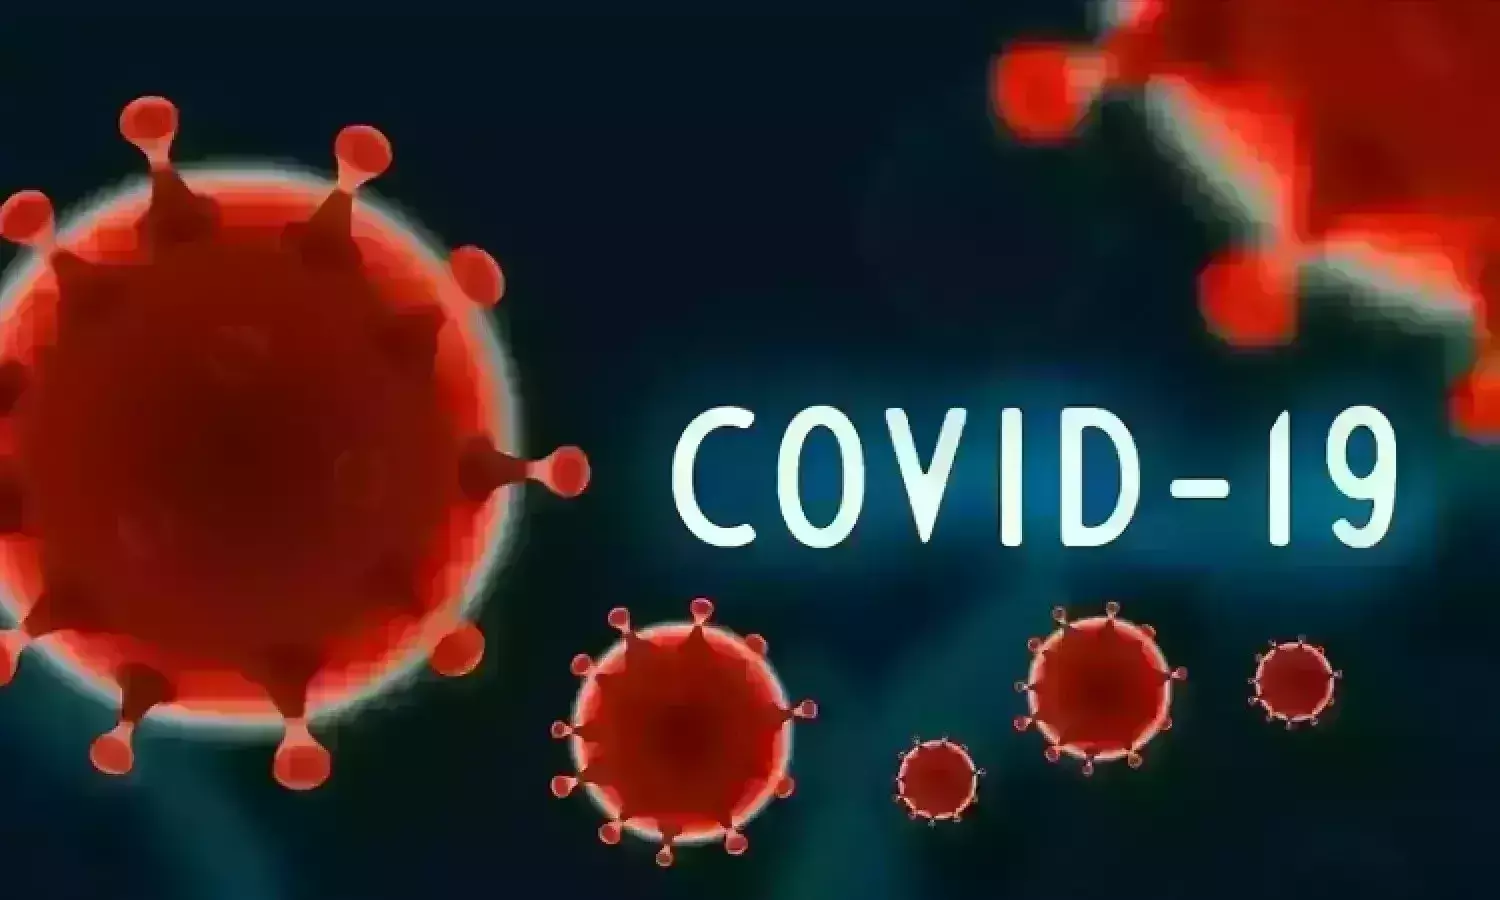 80 मौतों से कांपा देश: कोरोना वायरस का भयानक प्रकोप, अलर्ट हुई सरकार